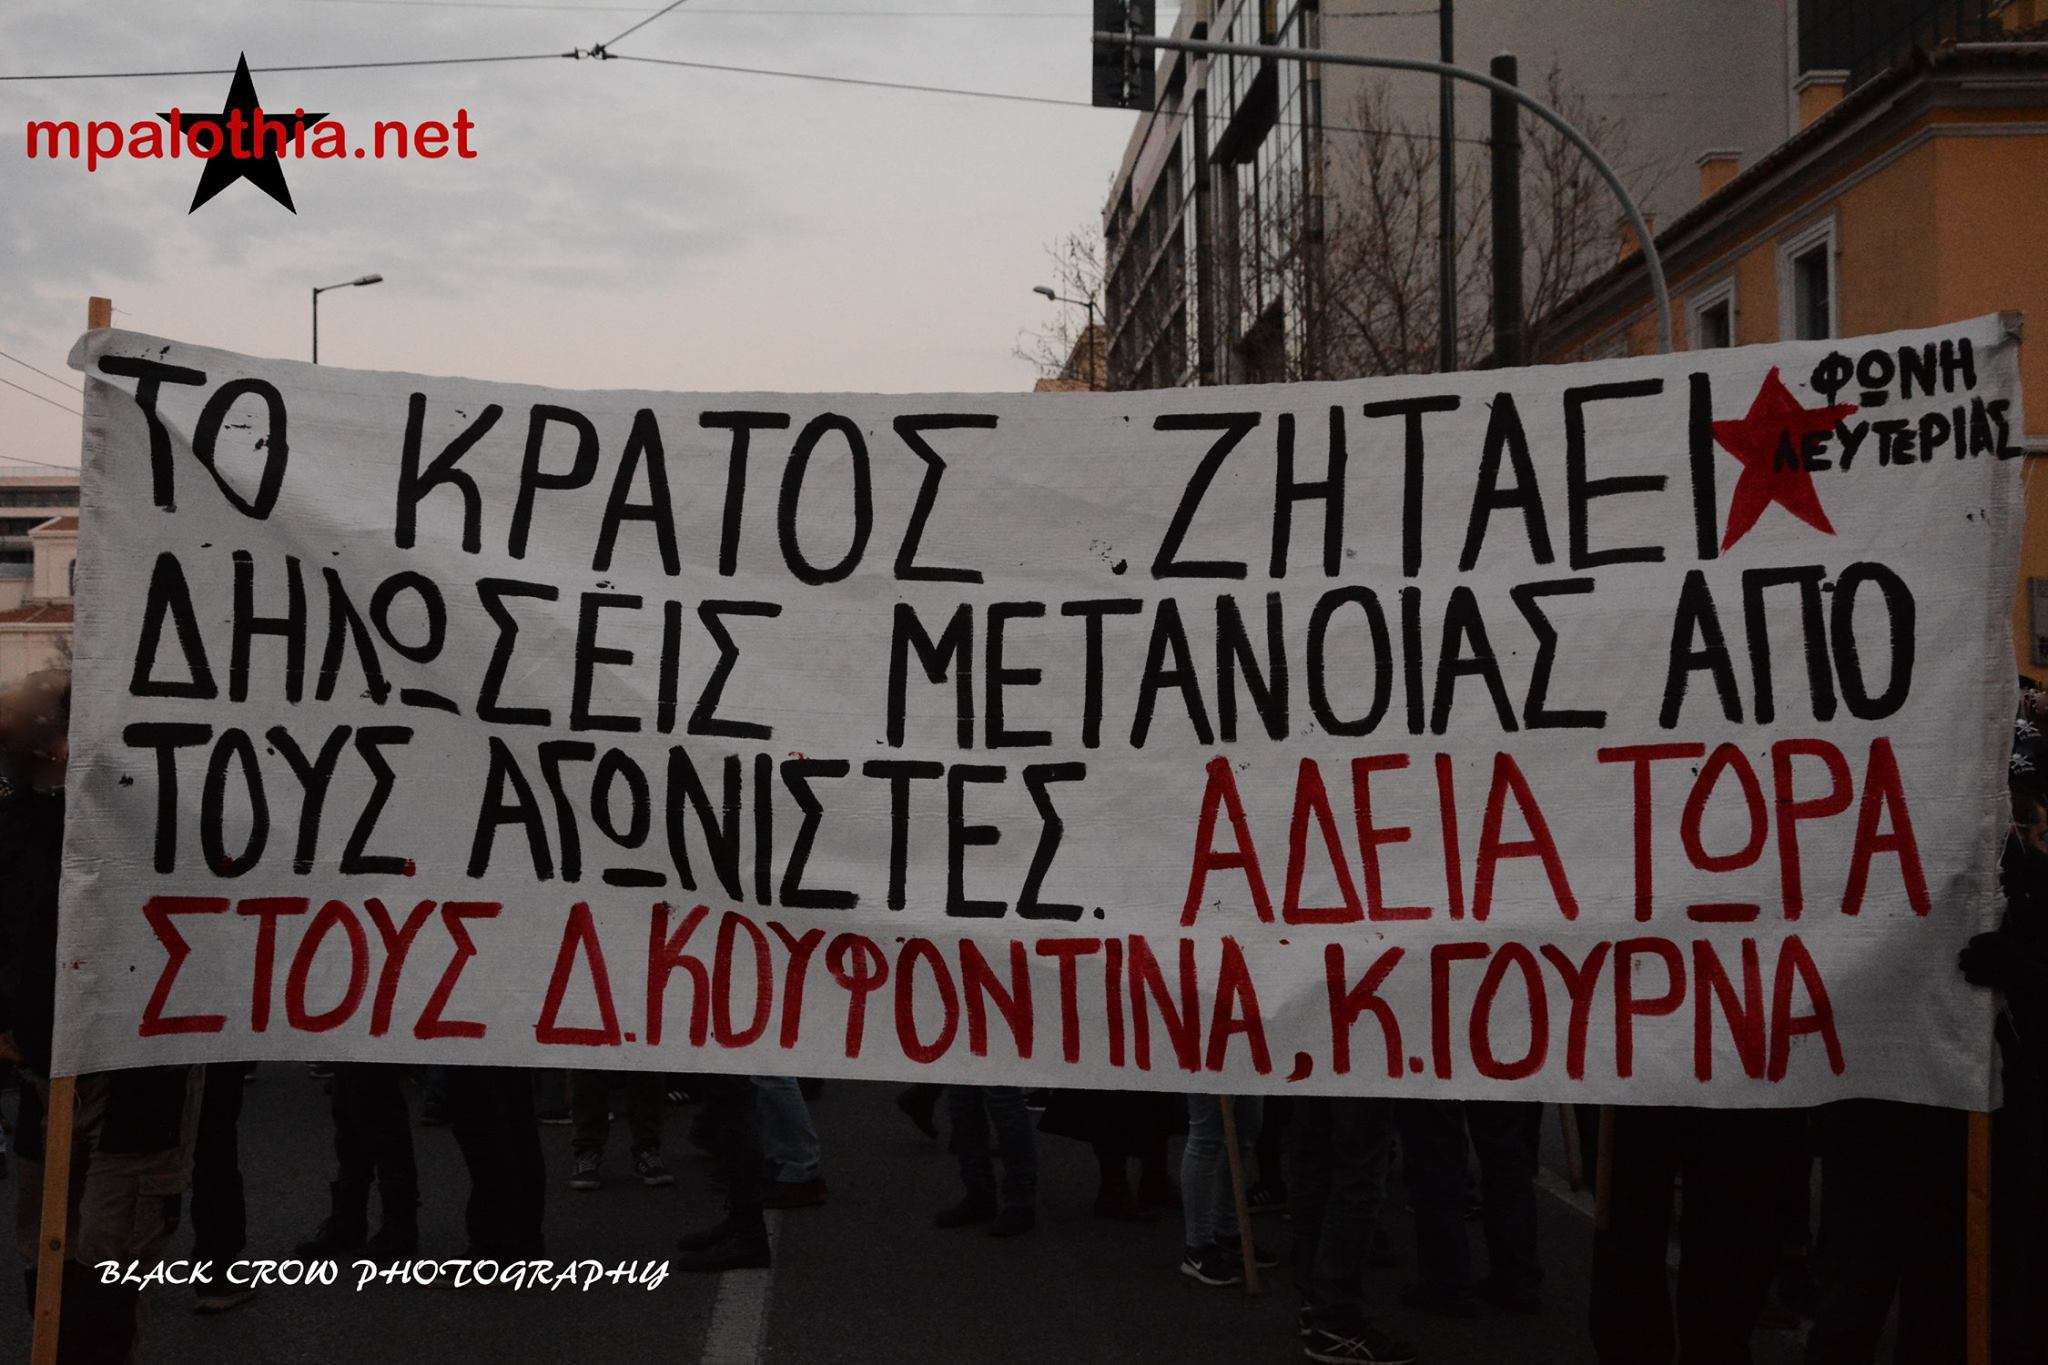 Αθήνα: Φωτογραφιές από την πορεία στα πλαίσια της πανελλαδικής ημέρας δράσεων για χορήγηση αδειών σε Γουρνά και Κουφοντίνα